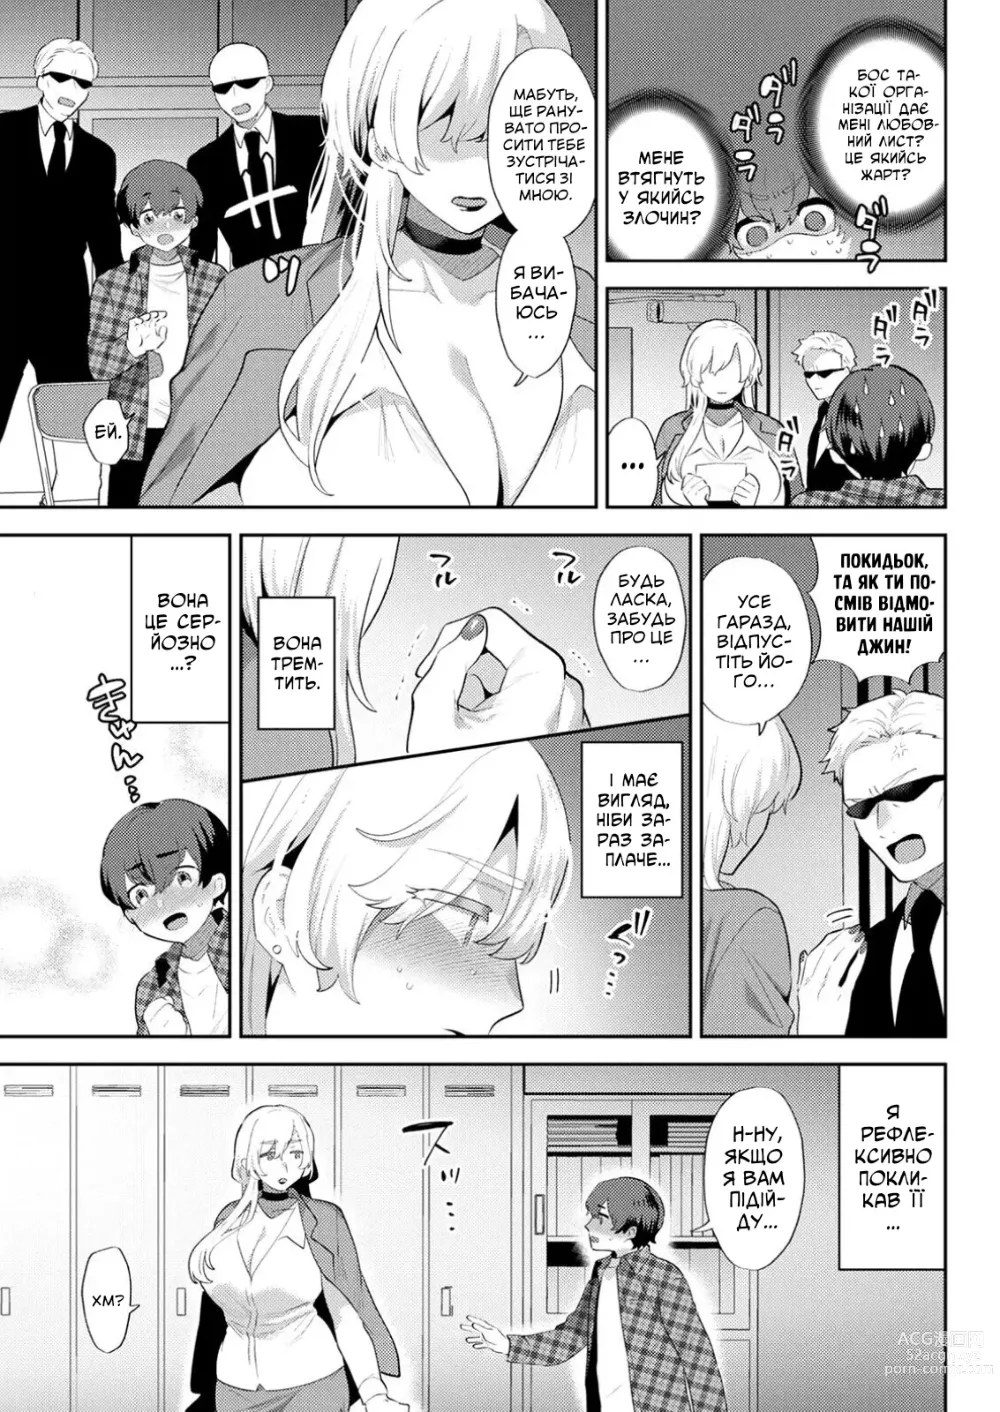 Page 5 of manga [Моґікі Хаямі] Я звичайний студент коледжу, але бос мафії шалено в мене закохана!!!